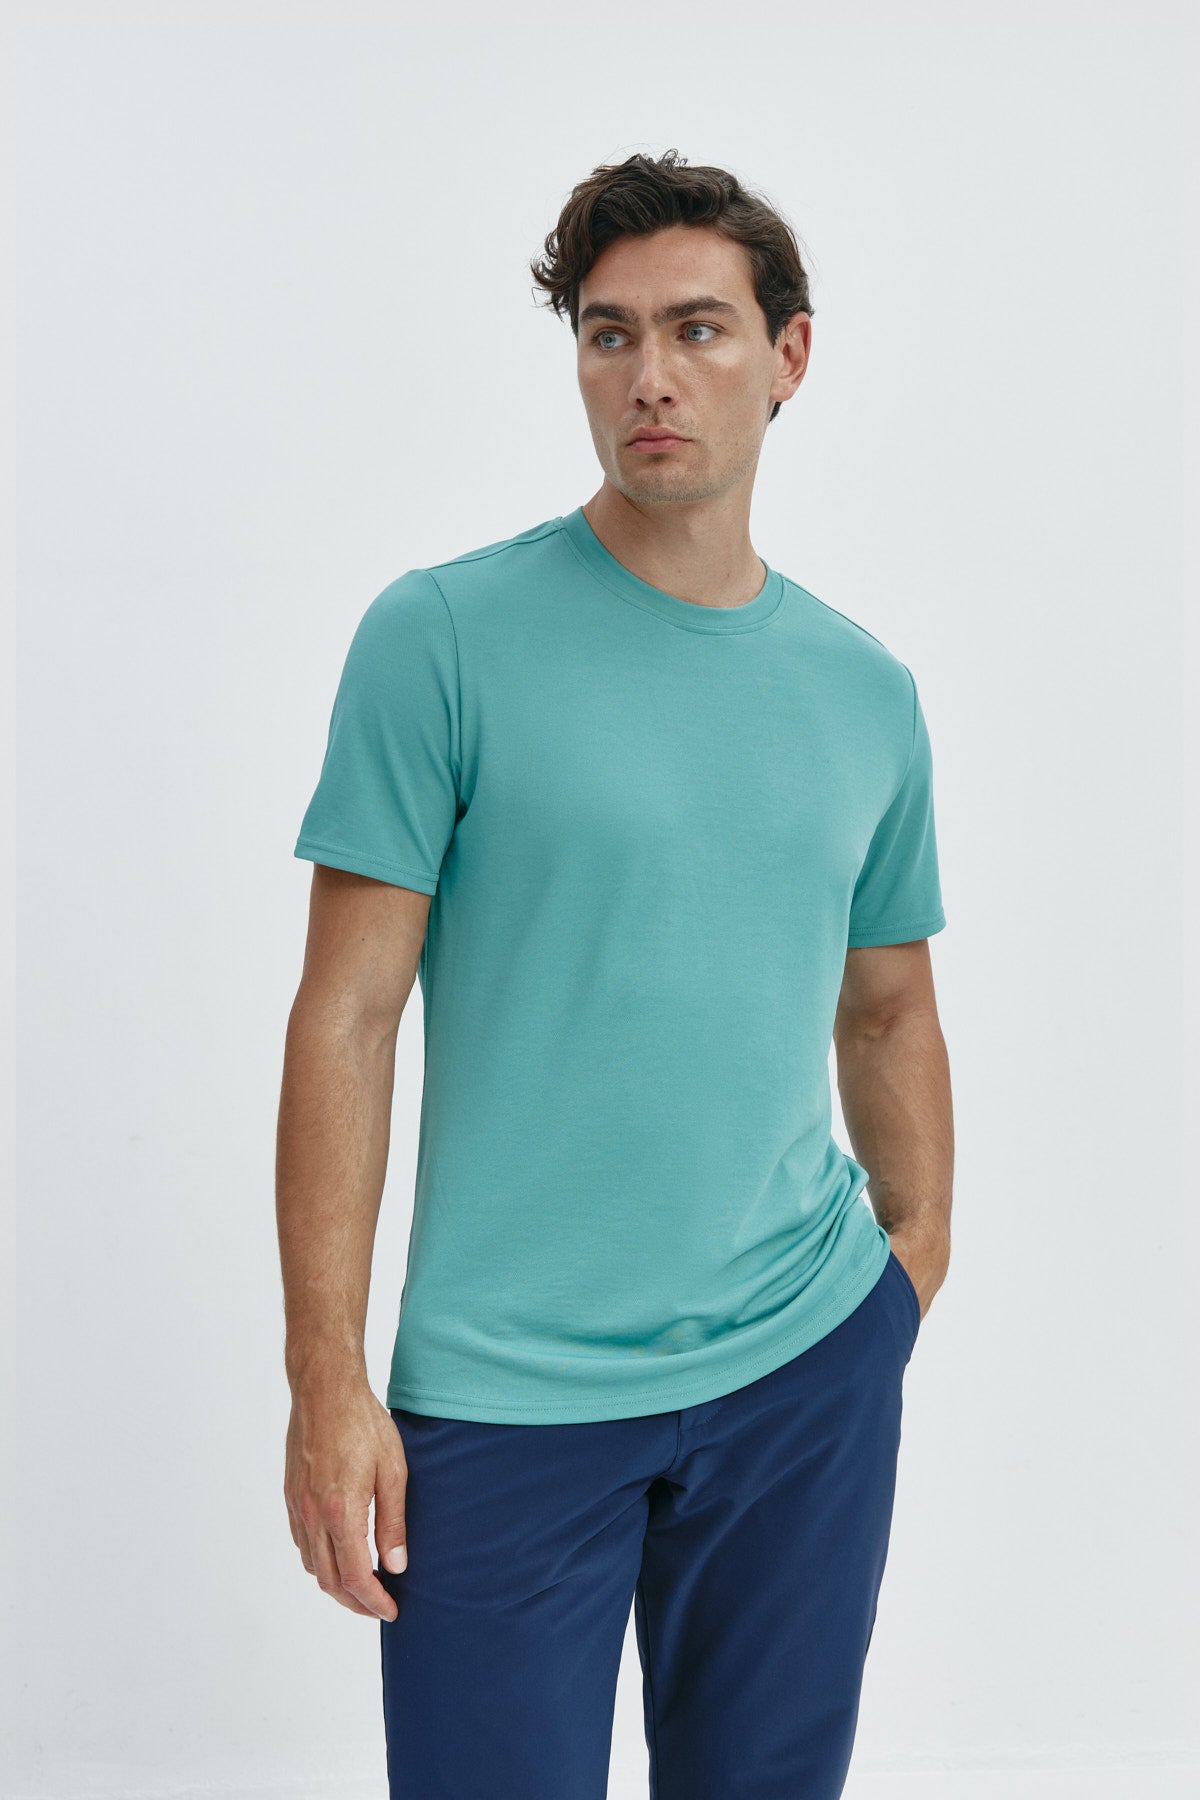 Camiseta de hombre verde clorofila de Sepiia, estilo y versatilidad en una prenda resistente. Foto fente